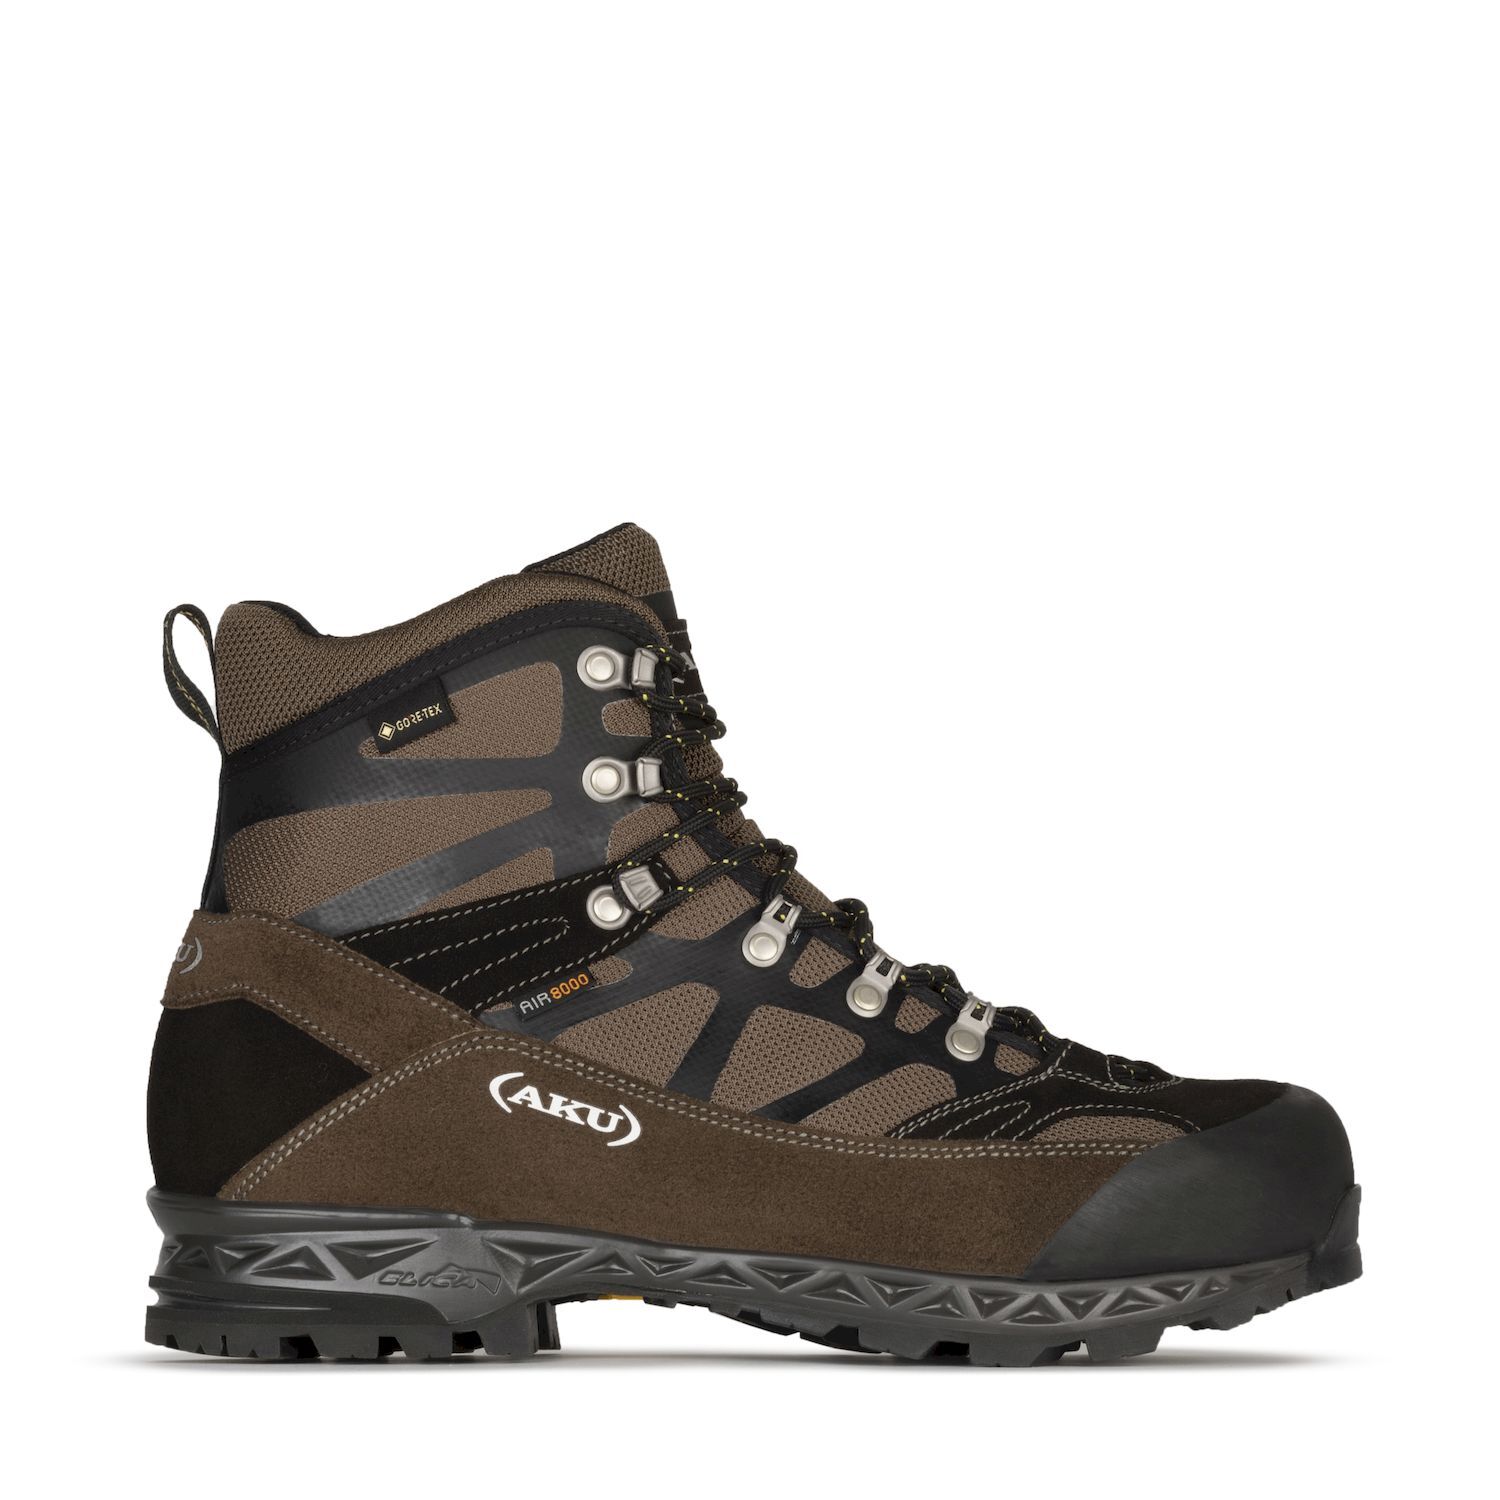 Aku Trekker Pro GTX - Hiking boots - Men's